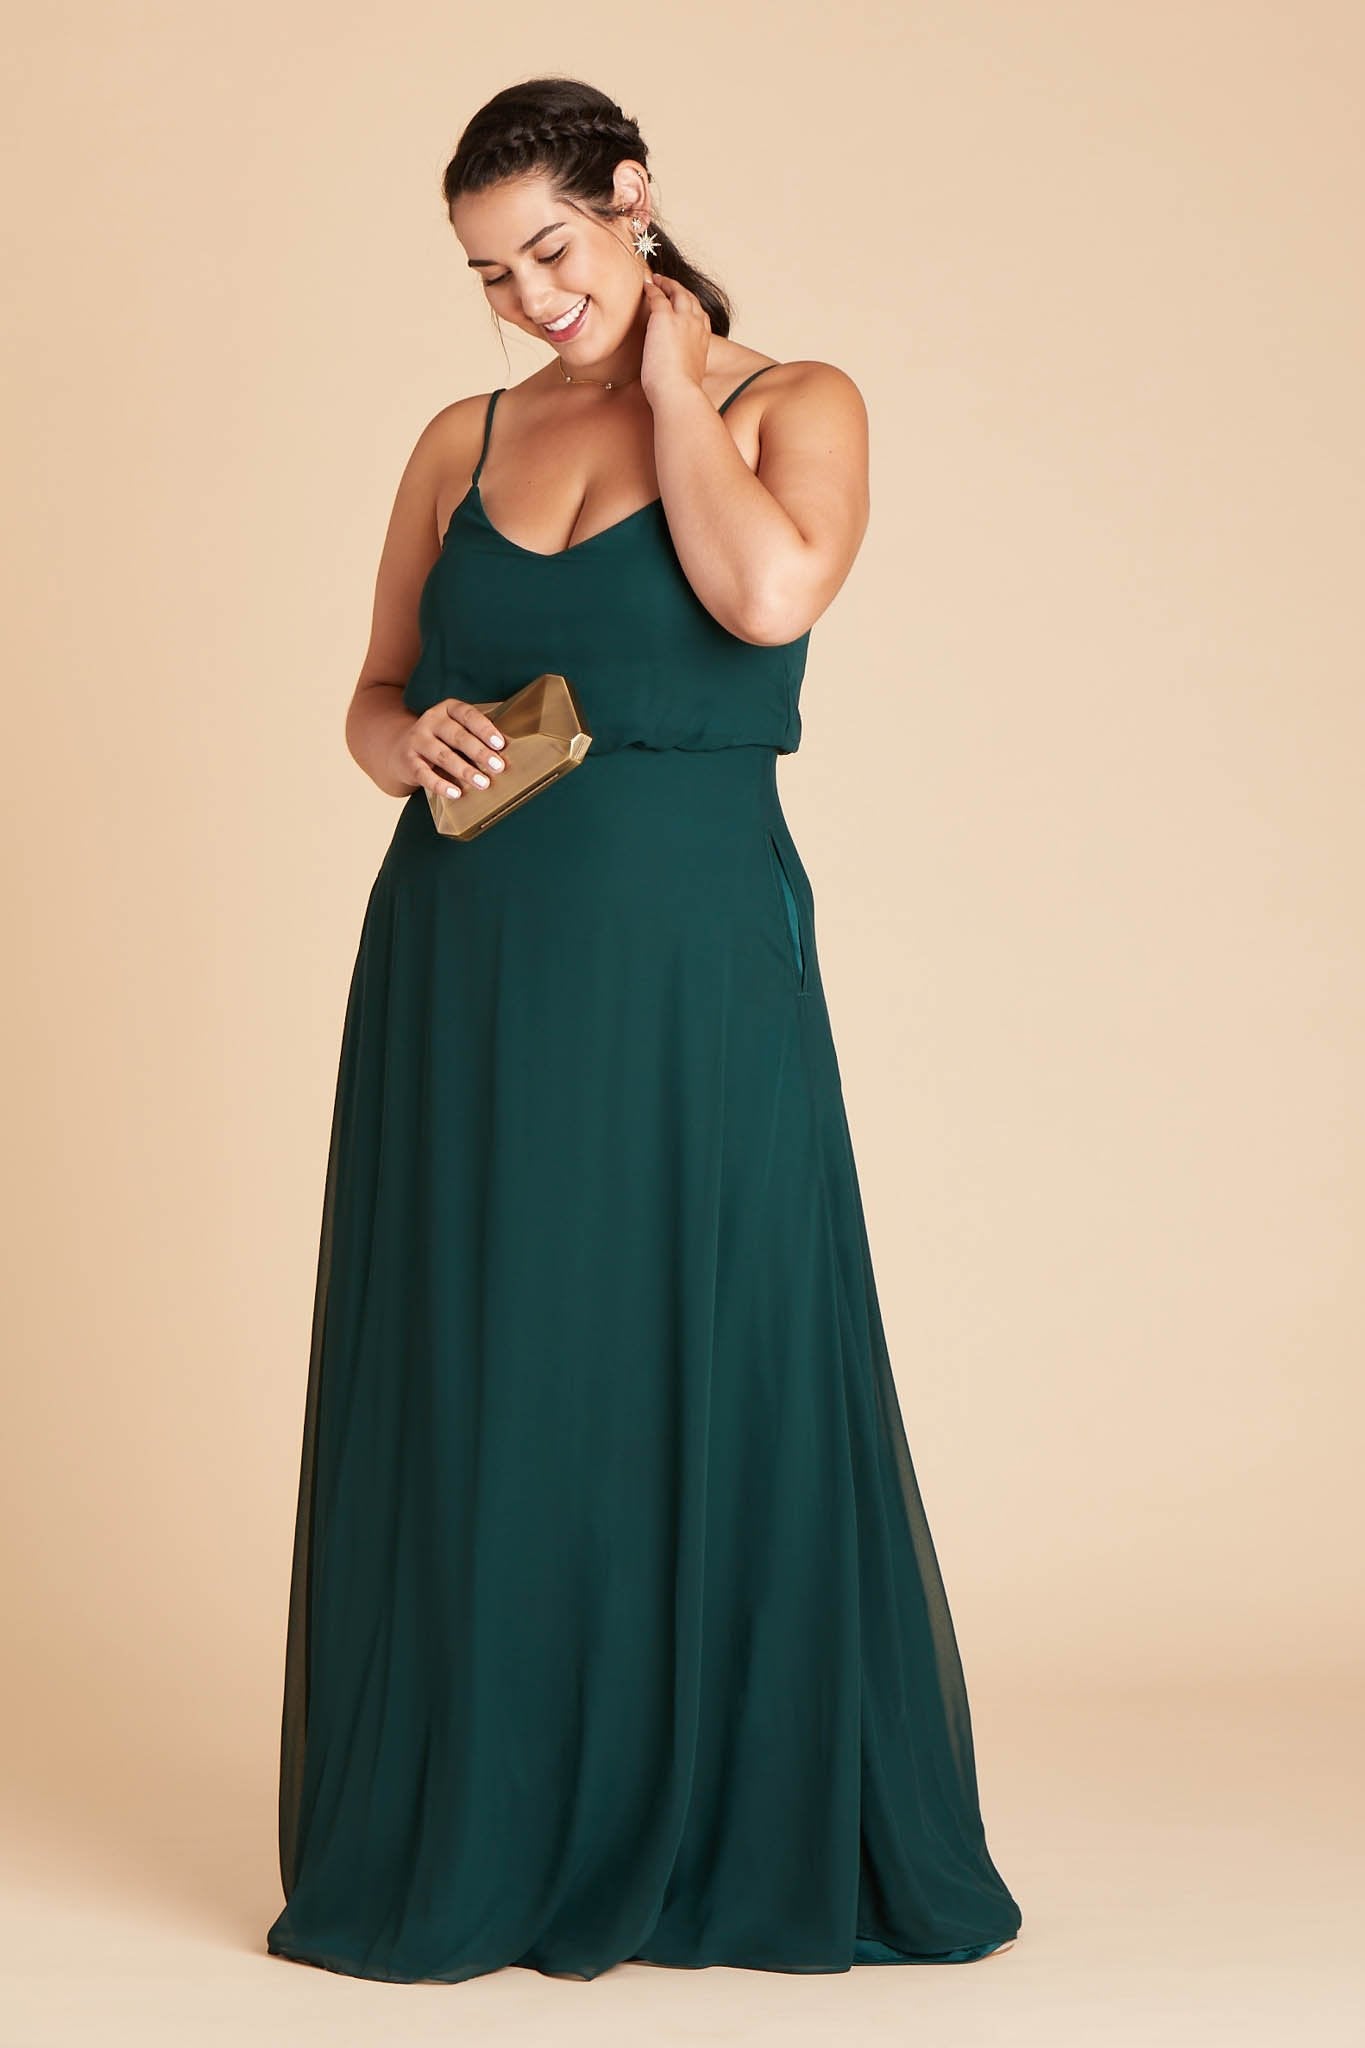 Gwennie plus size bridesmaid dress in emerald green chiffon by Birdy Grey, side view